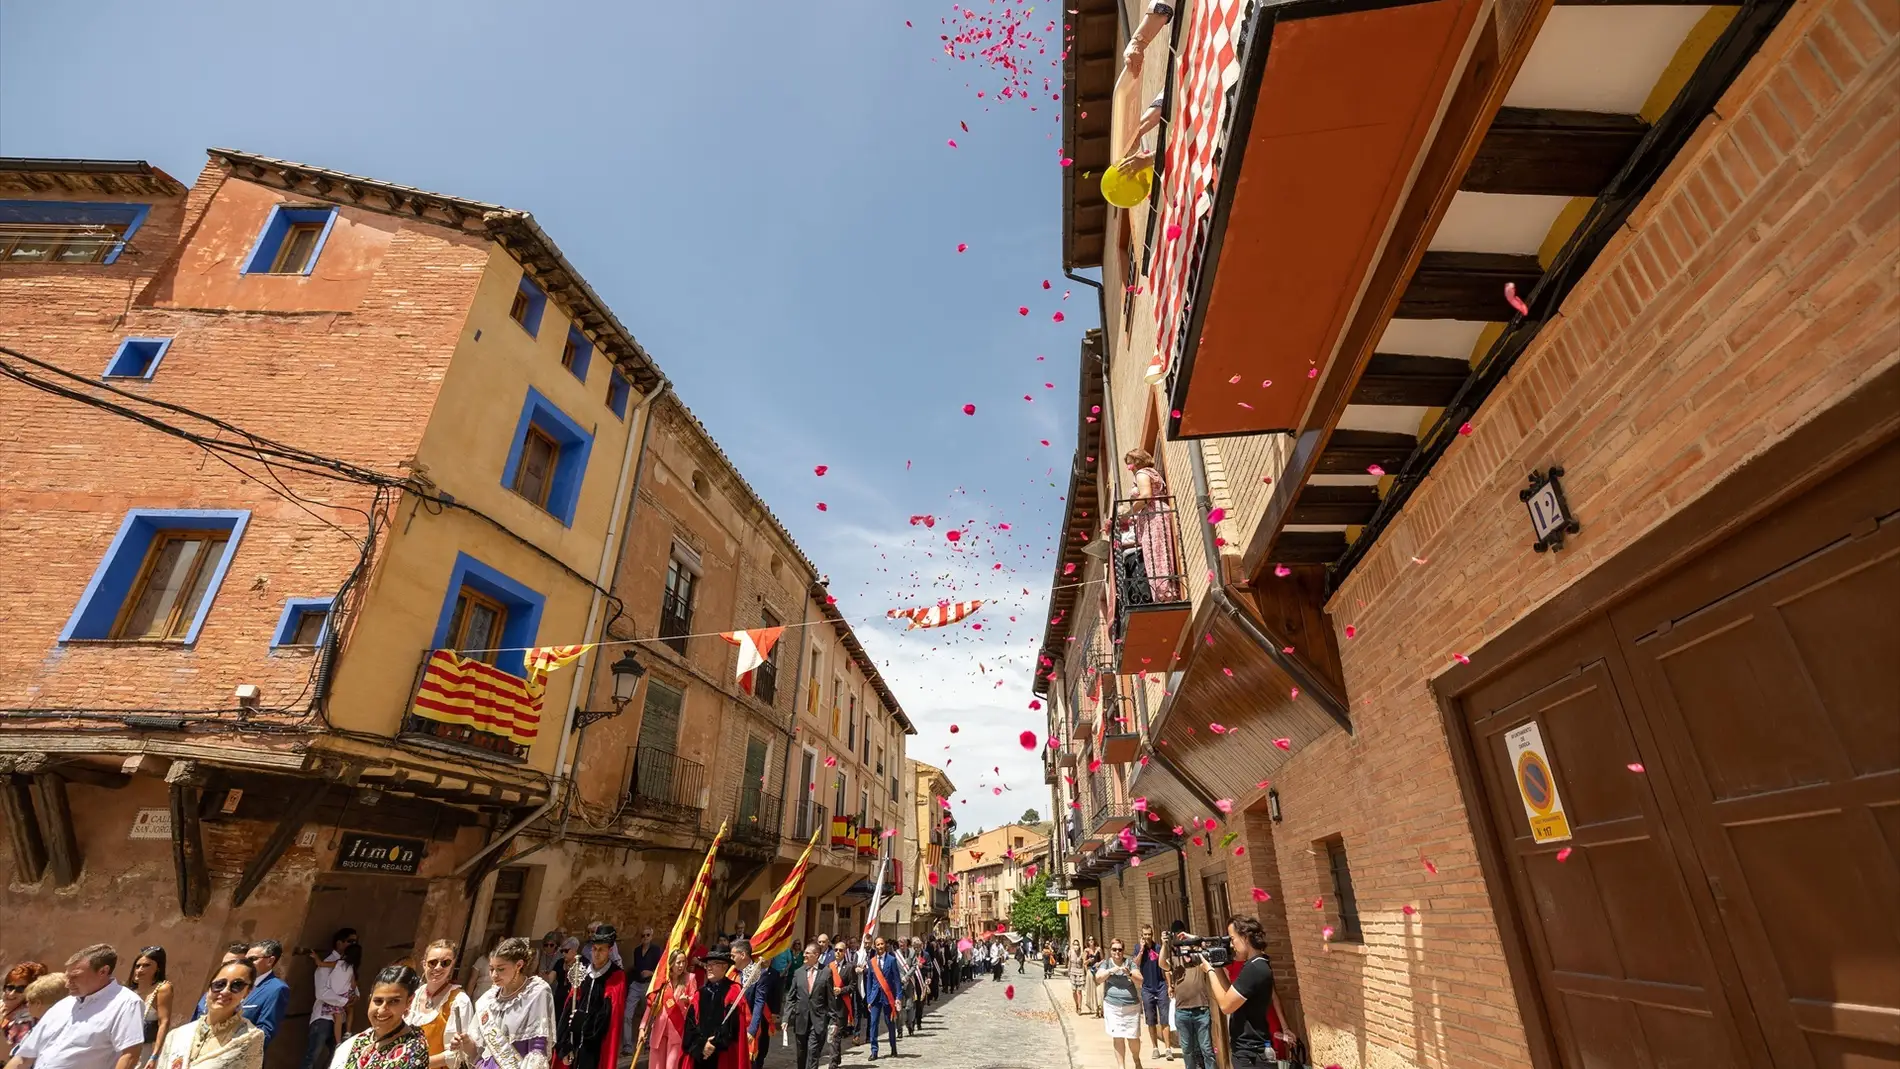 Celebración del Corpus Christi en el municipio de Daroca, Zaragoza